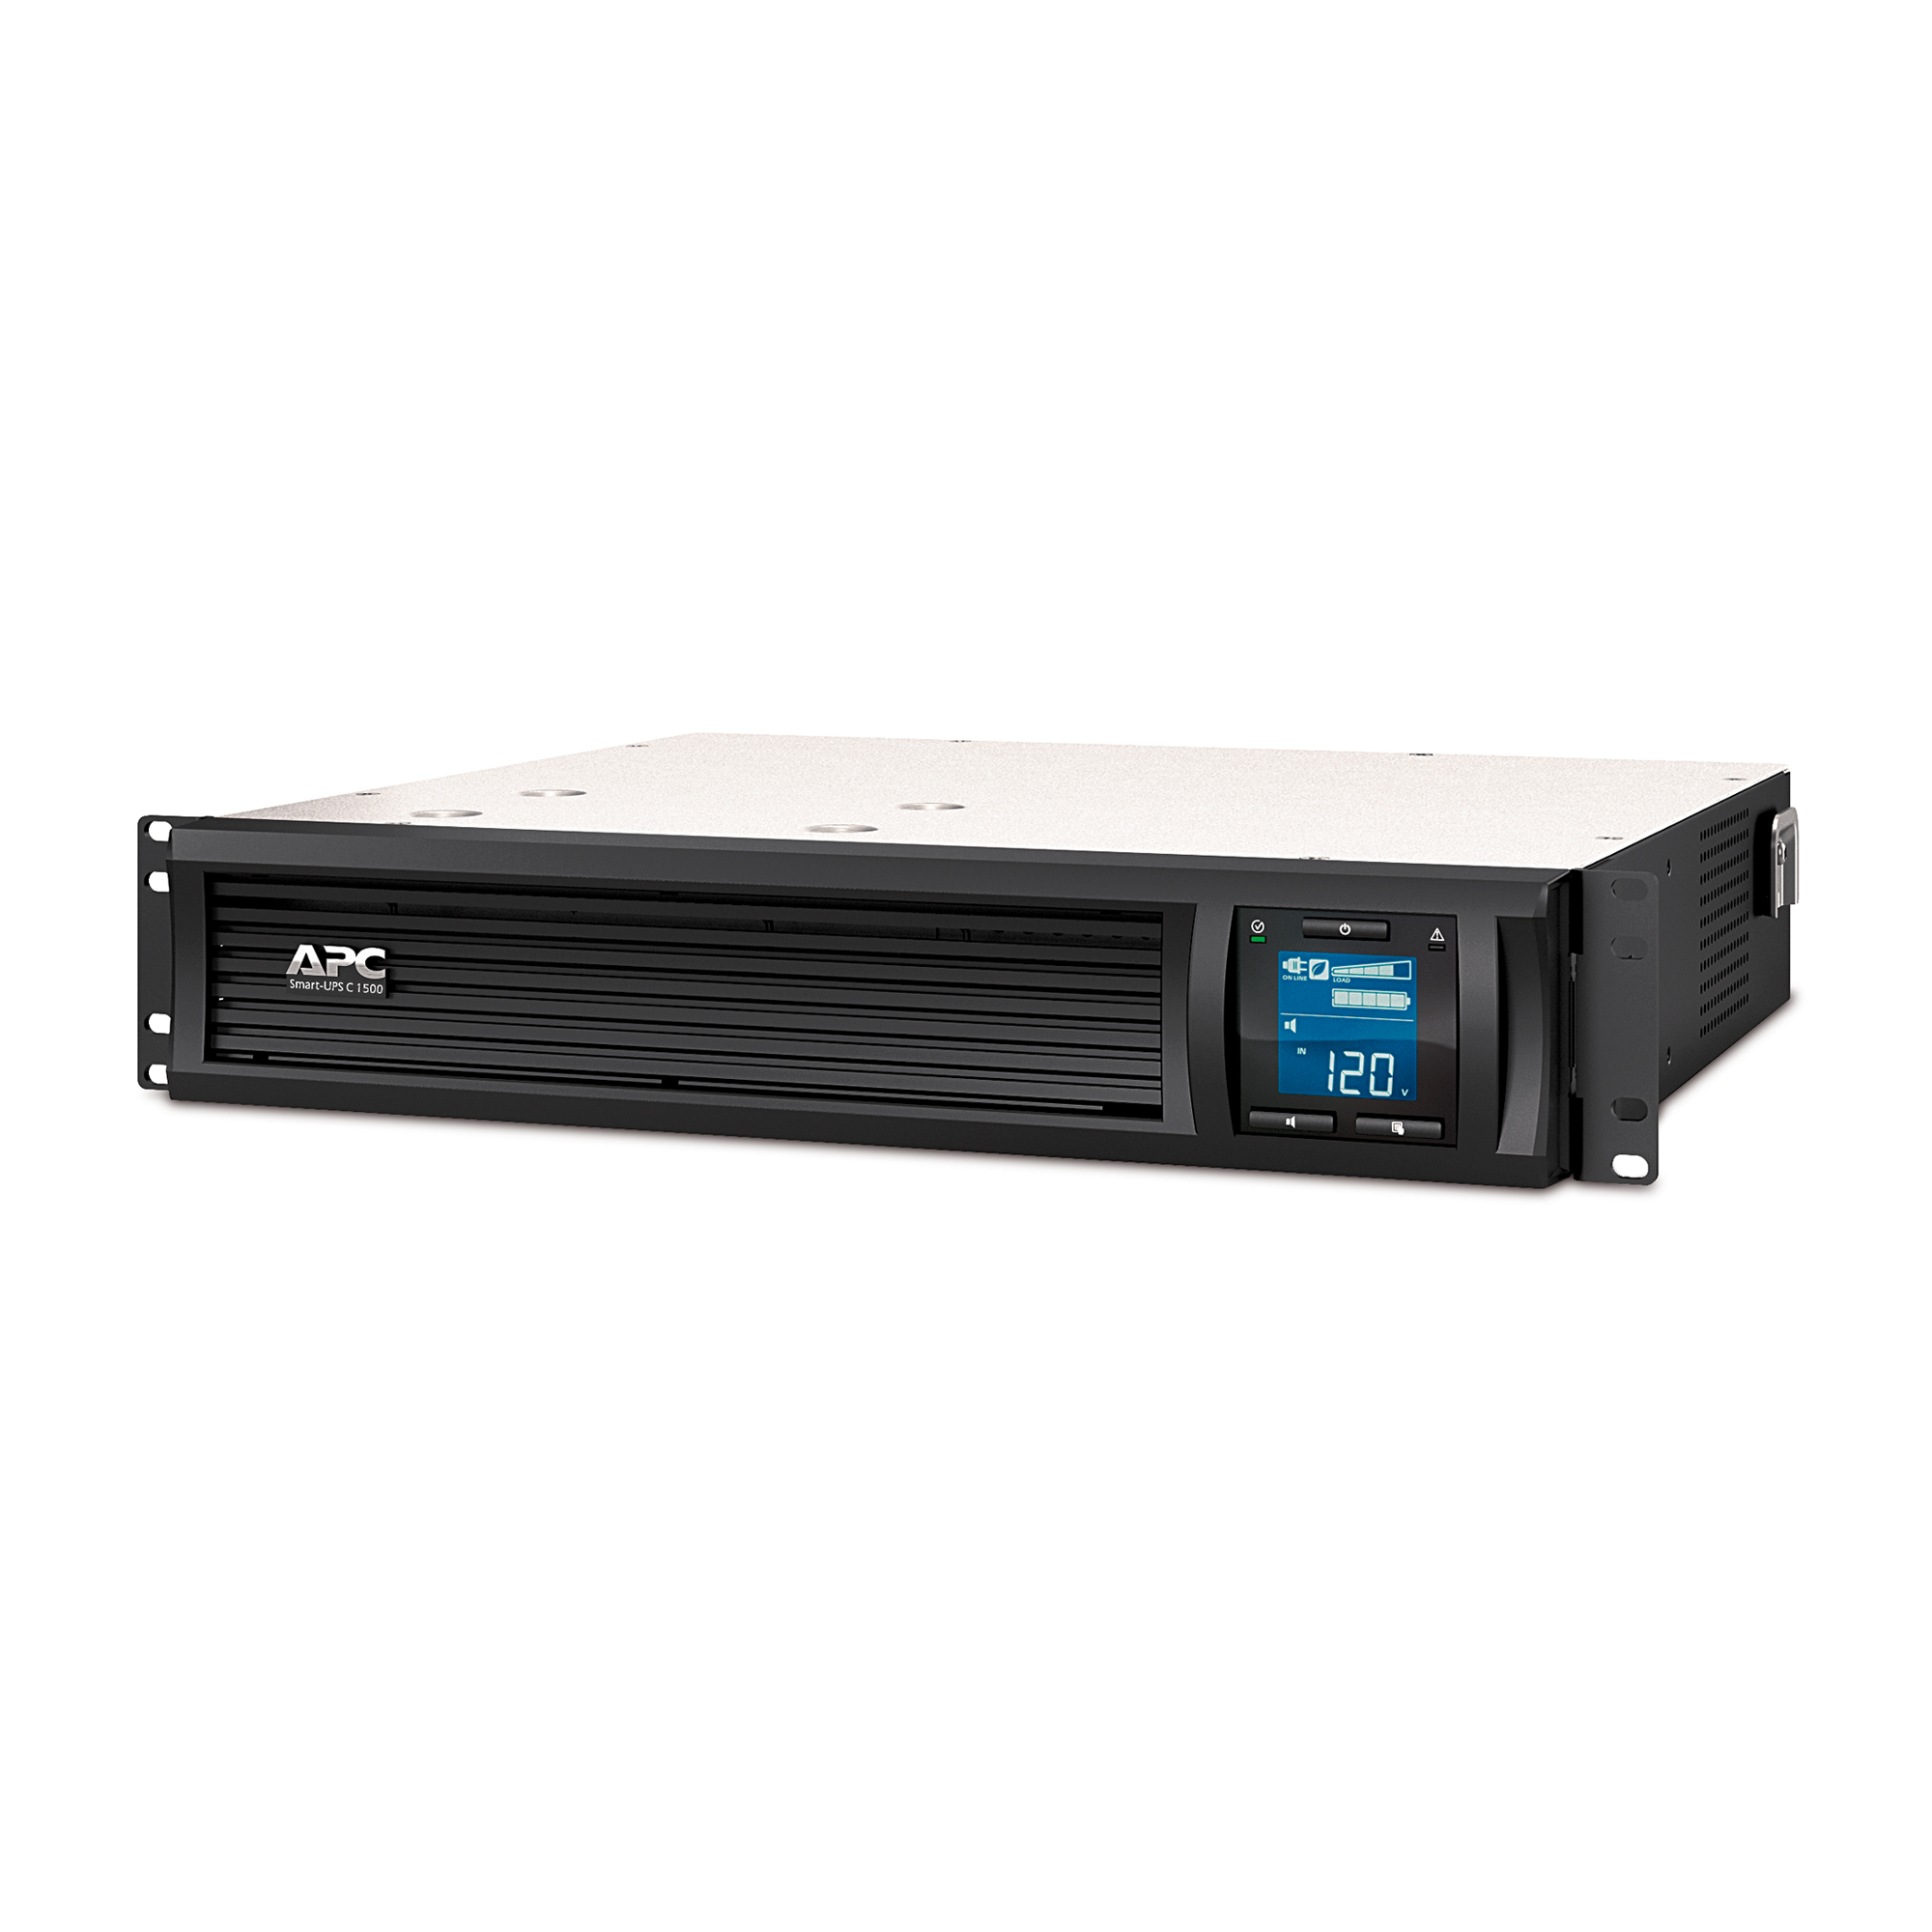 UPS-C1500-L: 1500VA Line Interactive UPS - 900W